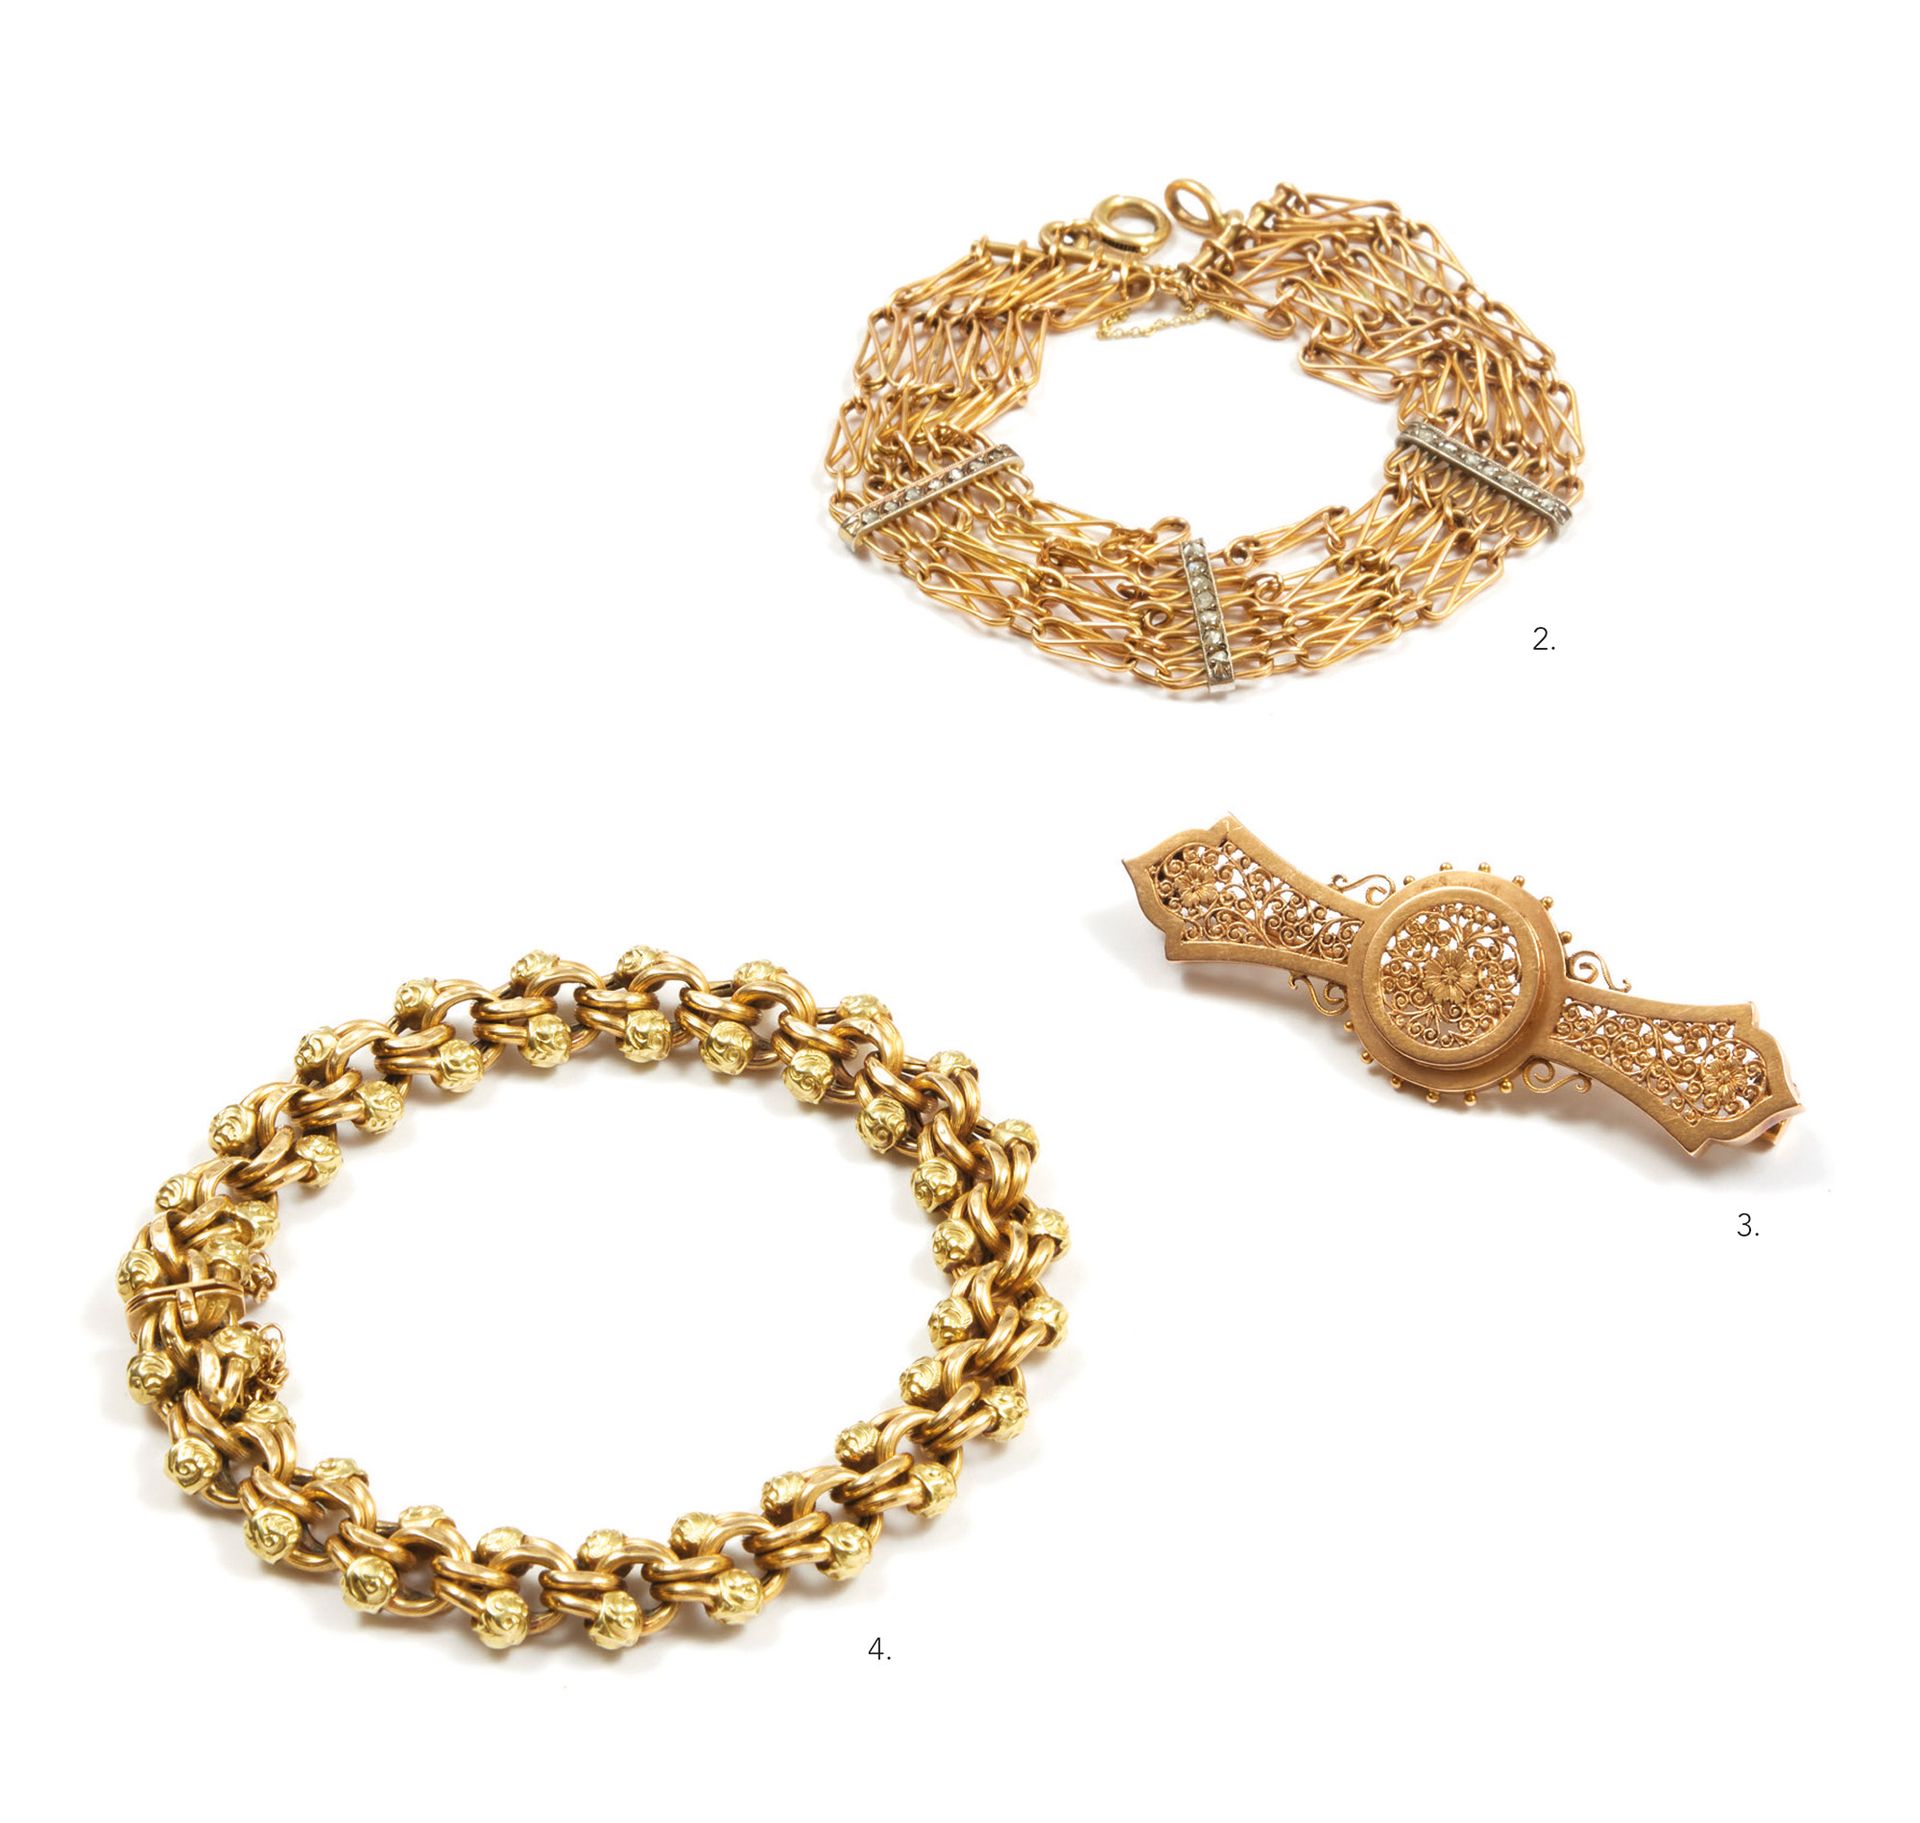 Bracelet 手链 
18K（750）金，由椭圆形条纹链接和小型风格化的花卉图案组成。 
19世纪末的法国作品。
长度：约20厘米。 
重量：21.8克